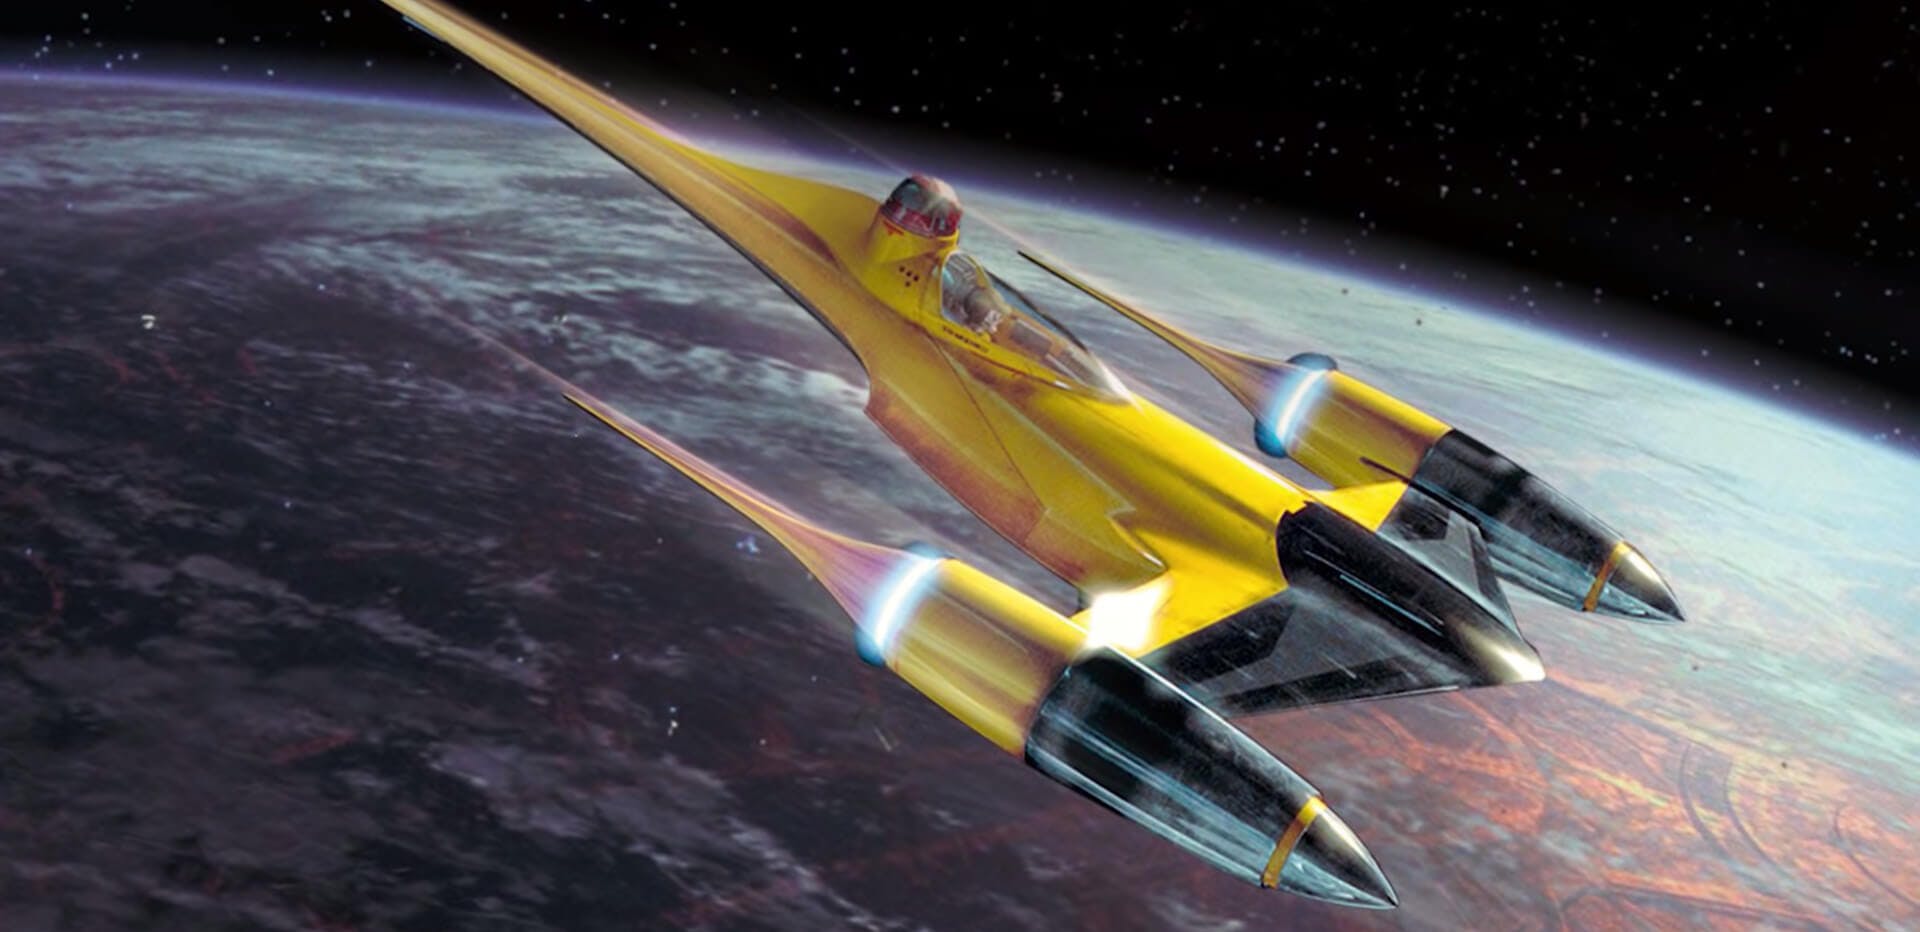 Star Wars ships - Naboo starfighter